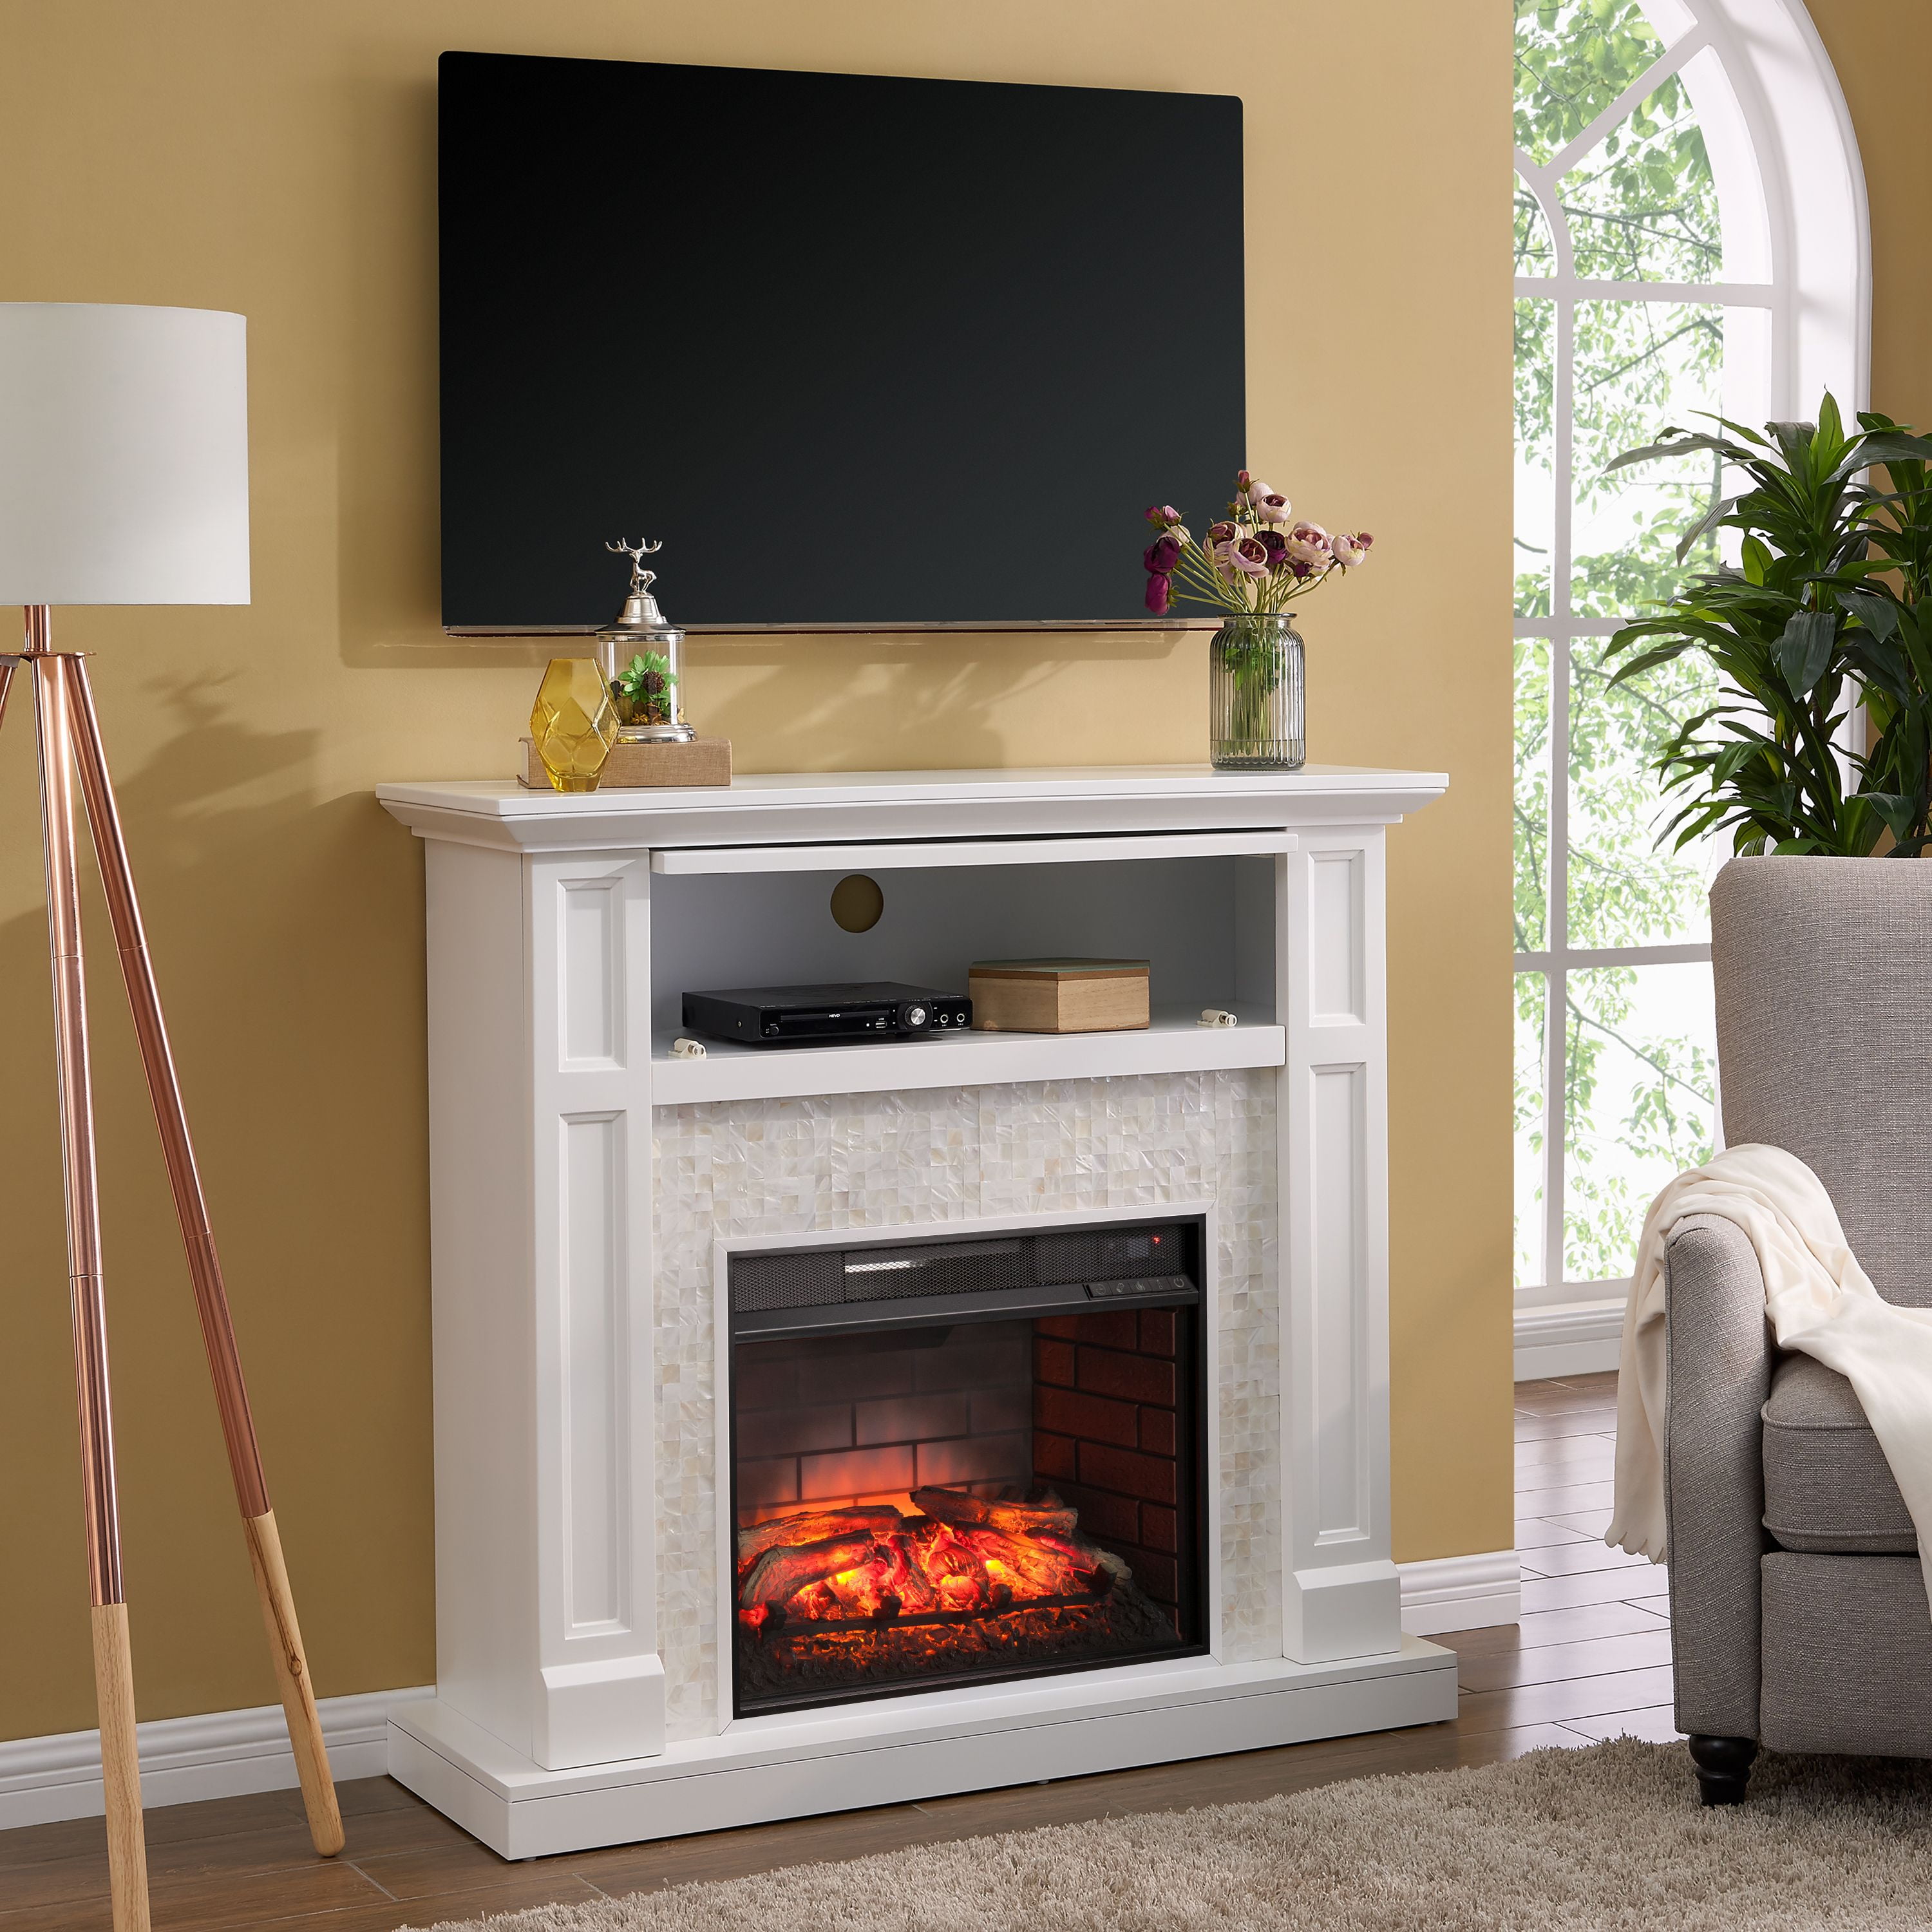 Naplio Tiled Electric Fireplace, White